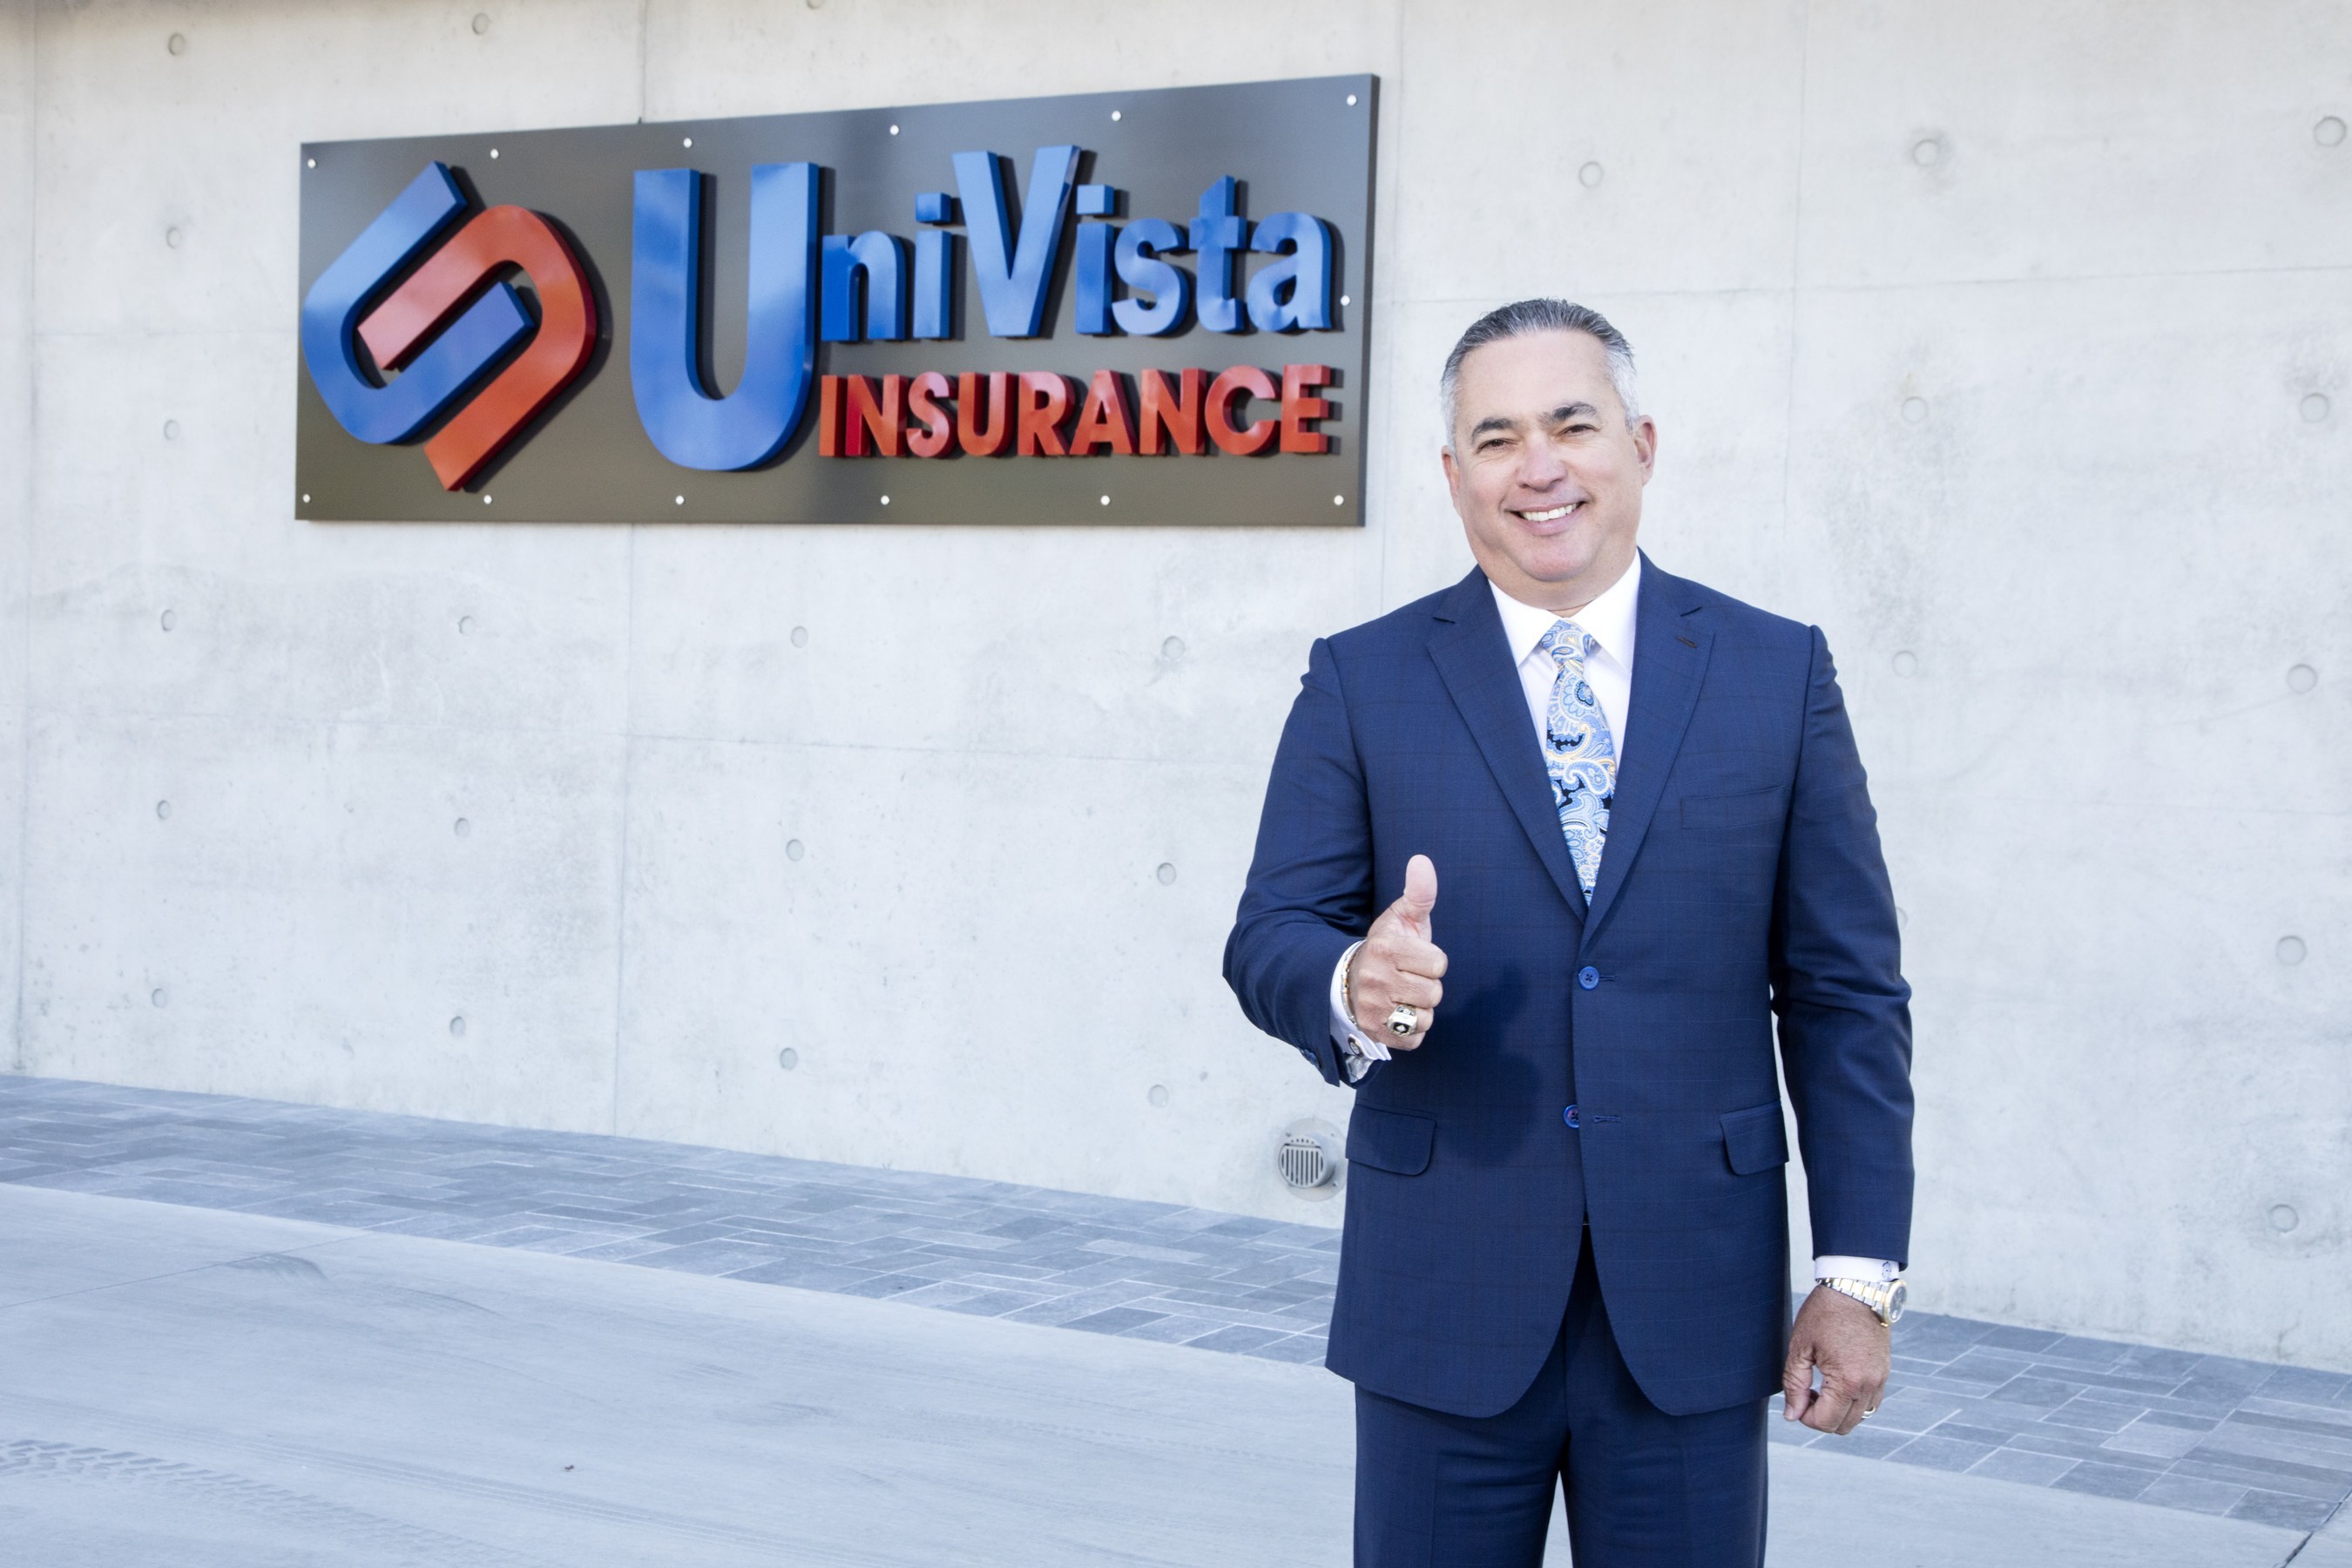  UniVista Insurance entre las 3 mil empresas más exitosas de América, según la lista 2019 INC. 5000